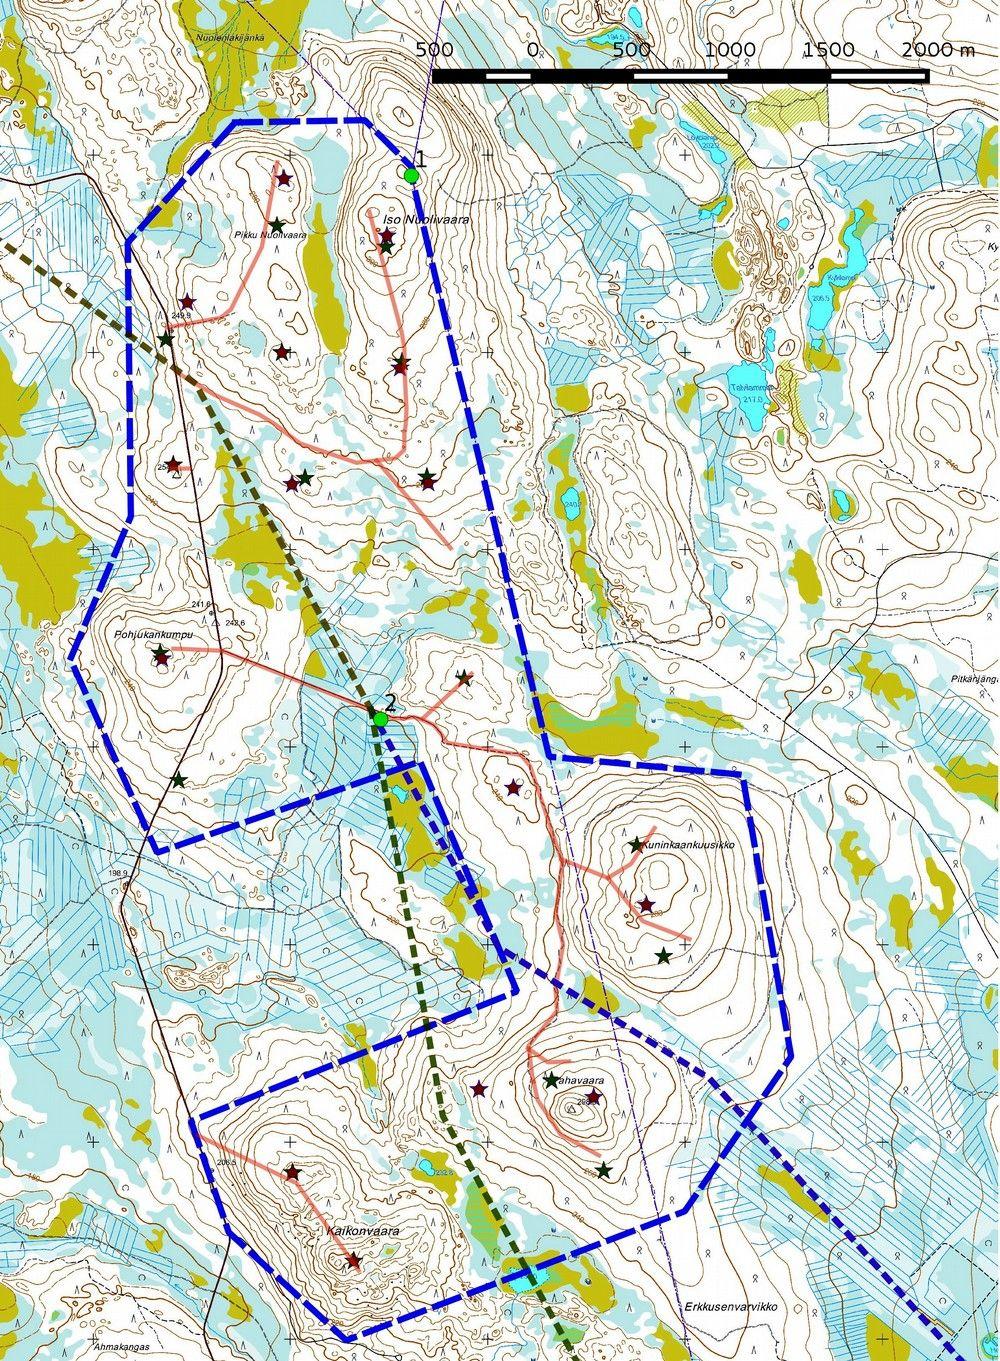 18 Kartta 8. Yleiskartta, kohteet 1 ja 2. Hankealueen rajaus sinisenä katkoviivana, voimalapaikat tähtenä (ve 17 vihreänä, ve 15 punaisena), tielinjaukset vaaleanpunaisena.